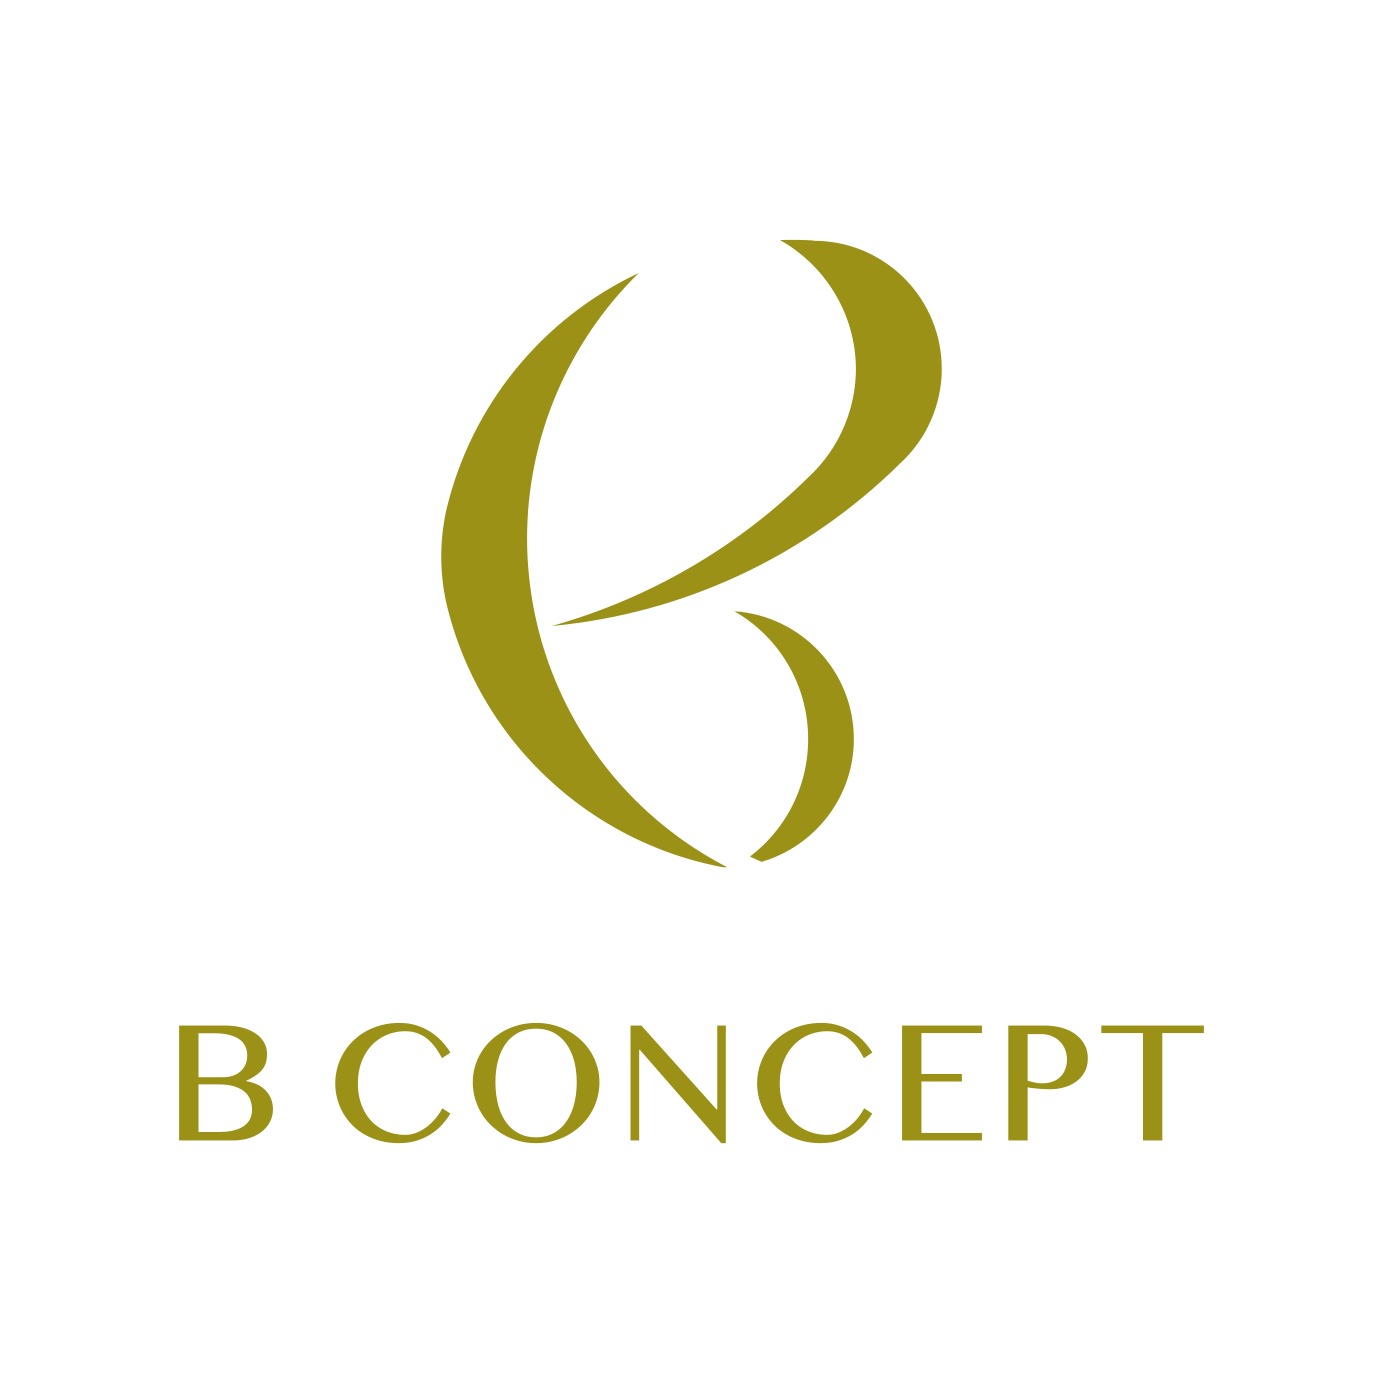 B-CONCEPT（ビーコンセプト）町田スタジオ